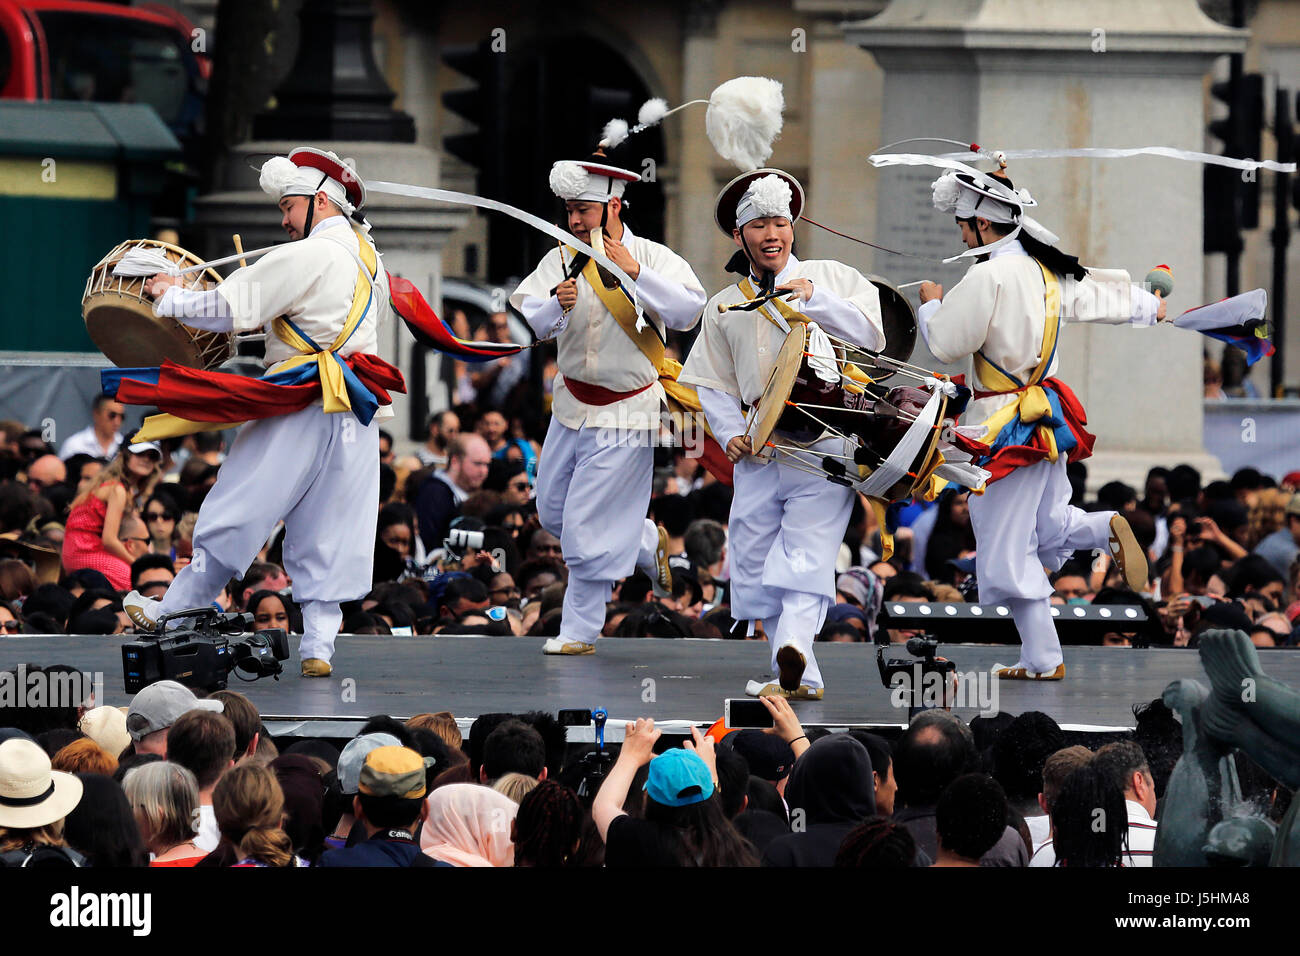 London, UK - 9. August 2015: Koreanische ethnischen Tänzer, Nongak, Bauern Tanz, in dem koreanischen Festival am Trafalgar Square, anwesenden Zuschauer. Stockfoto